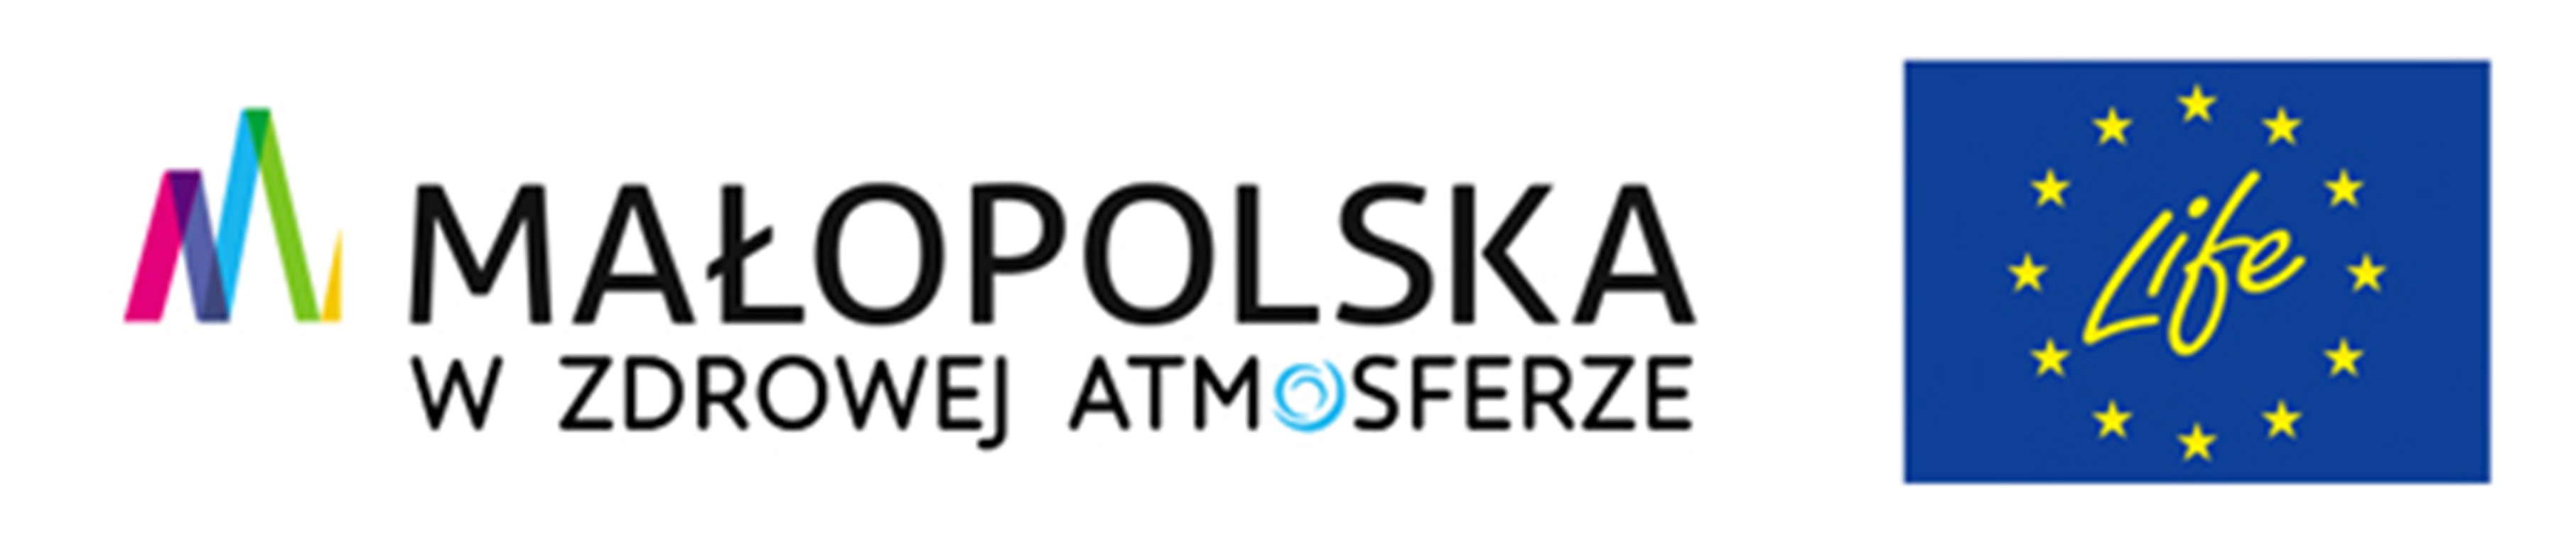 zdjęcie prezentuje logotyp Małopolska w zdrowej atmosferze oraz logo Life: na niebieskim tle koło z żółtych gwiazd w środku napis Life